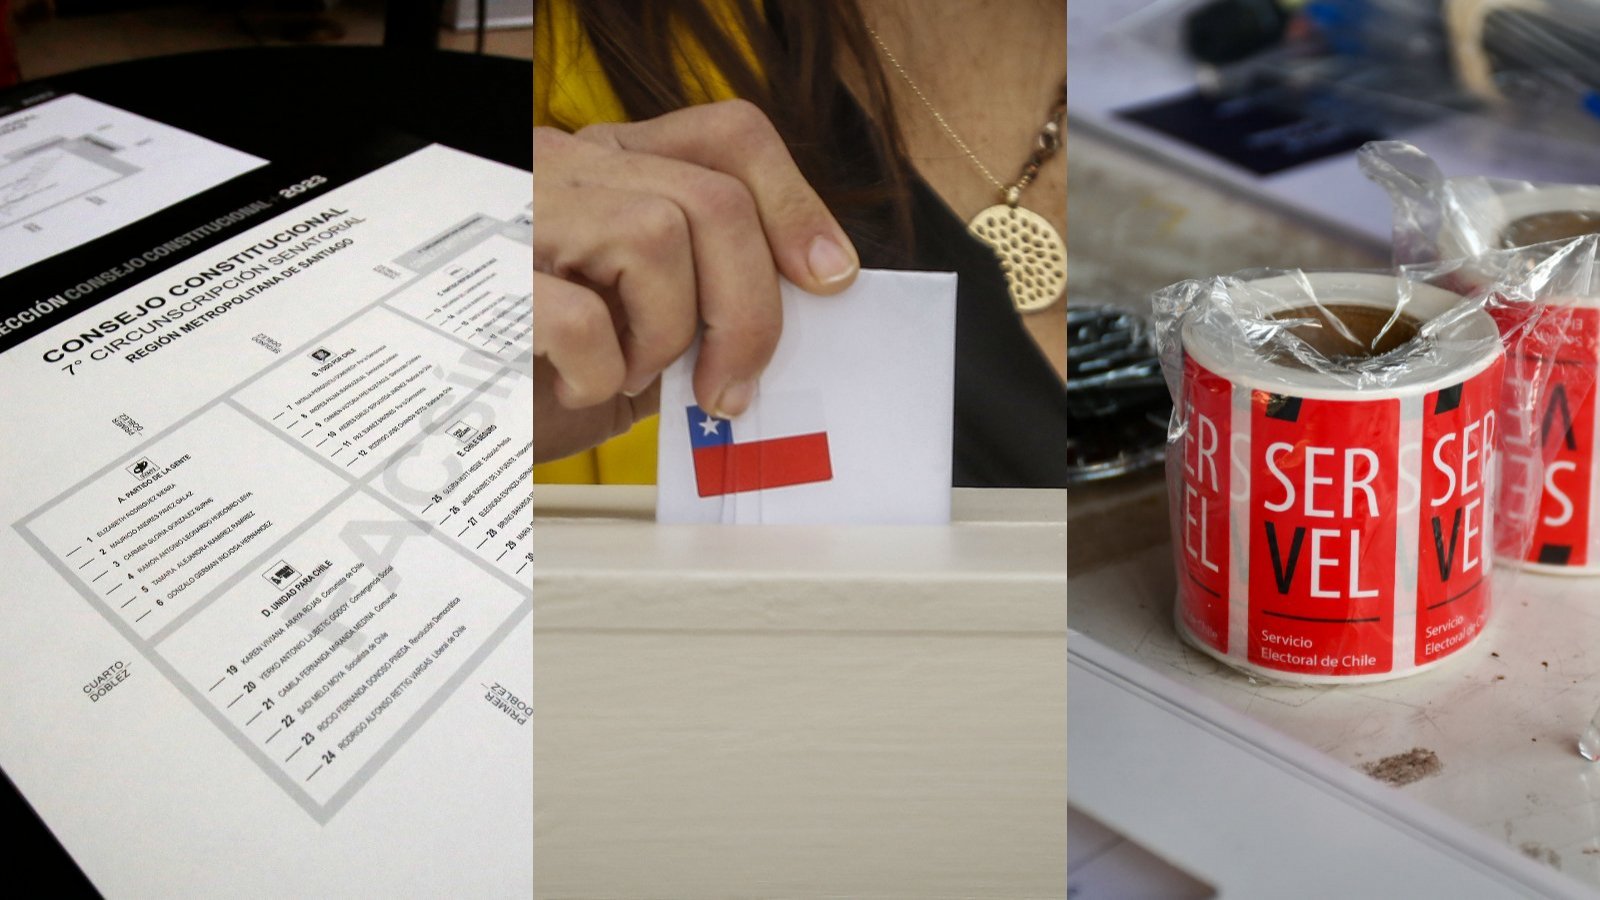 Un voto abierto, una persona ingresando un voto y stickers del Servel.